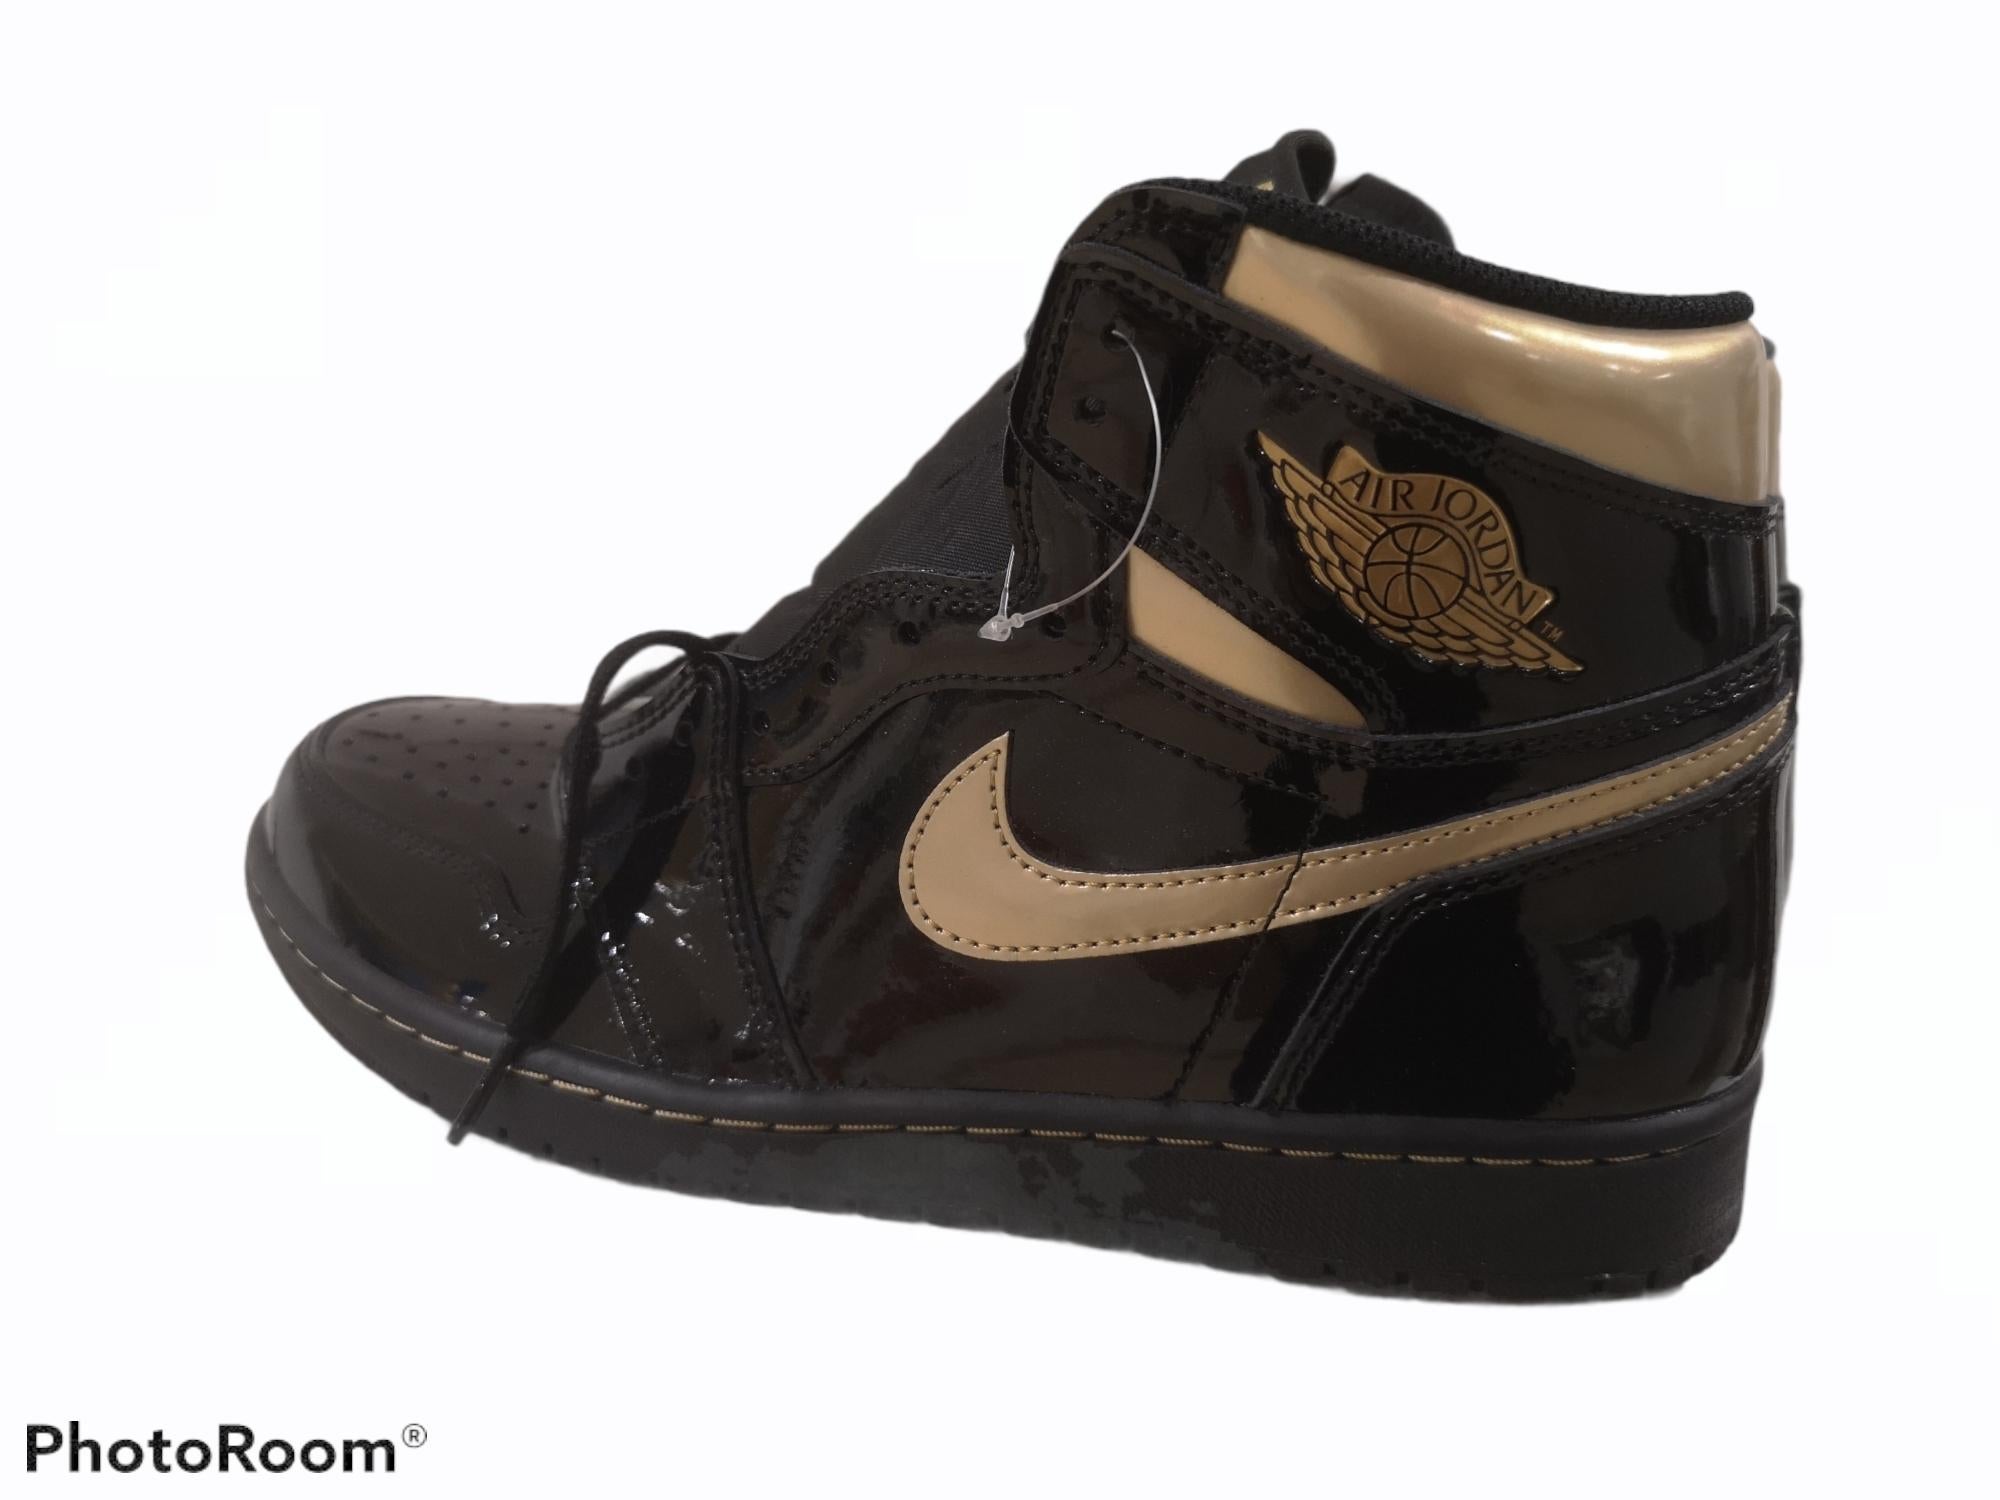 Air Jordan 1 High black metallic gold patent leather sneakers

This Air Jordan 1 High 